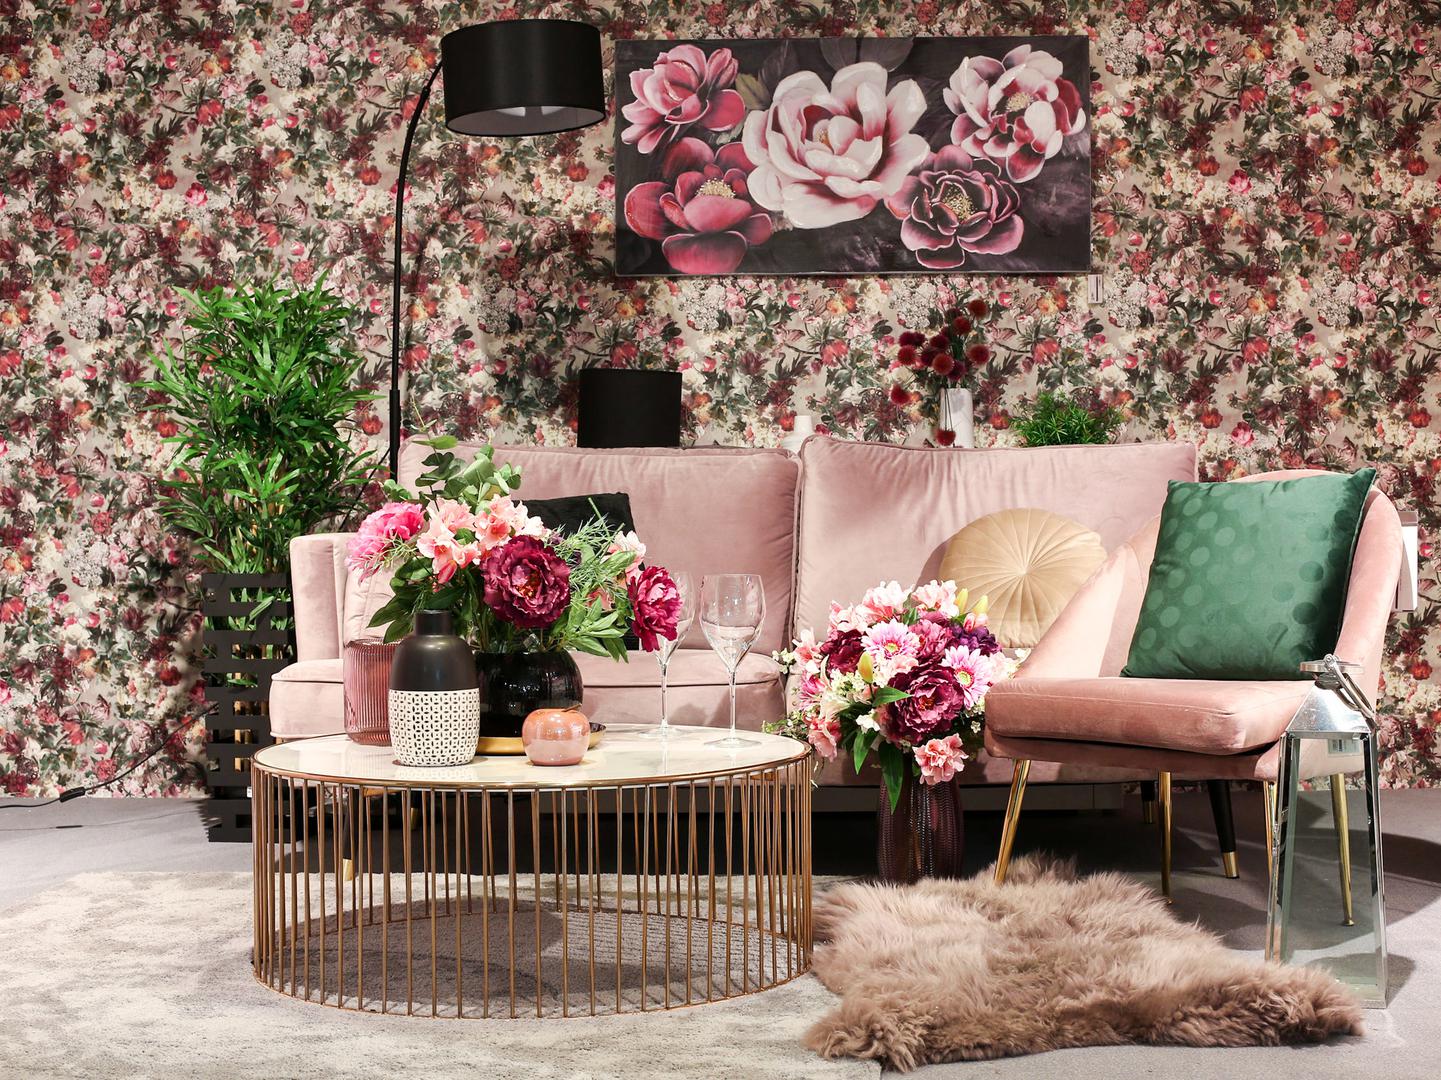 Plišana sofa u atraktivnoj pink boji, zlatni detalji i moćna cvjetna tapeta izvrstan su izbor za ljubitelje atraktivnih prostora. Namještaj i detalji dostupni su u Emmezeti